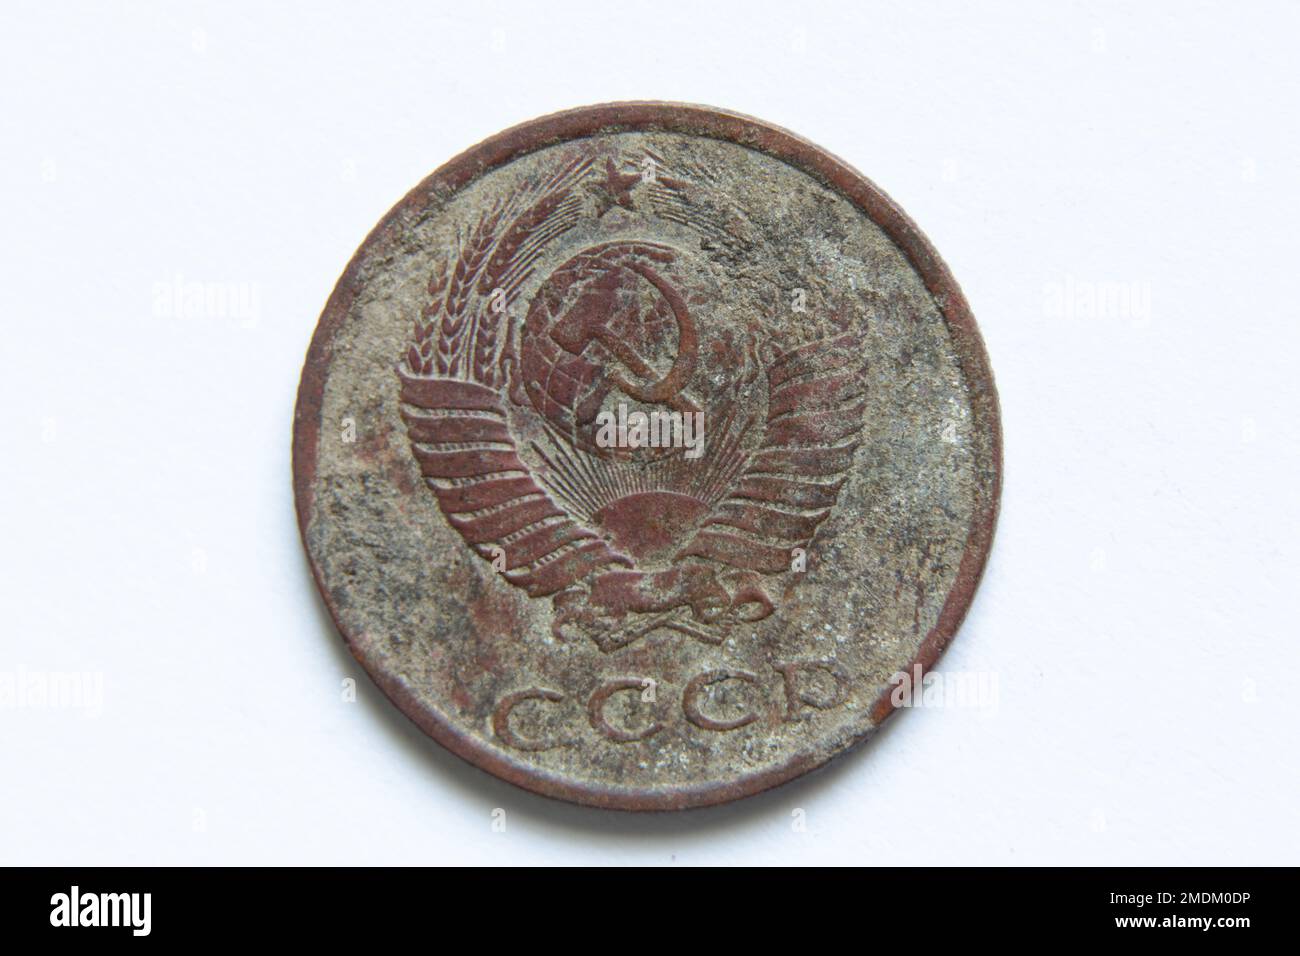 Alte udssr-Münzen in Stückelung von 20 Kopeken auf weißem Hintergrund, 20 Kopeken 1982, alte udssr-Münze Stockfoto